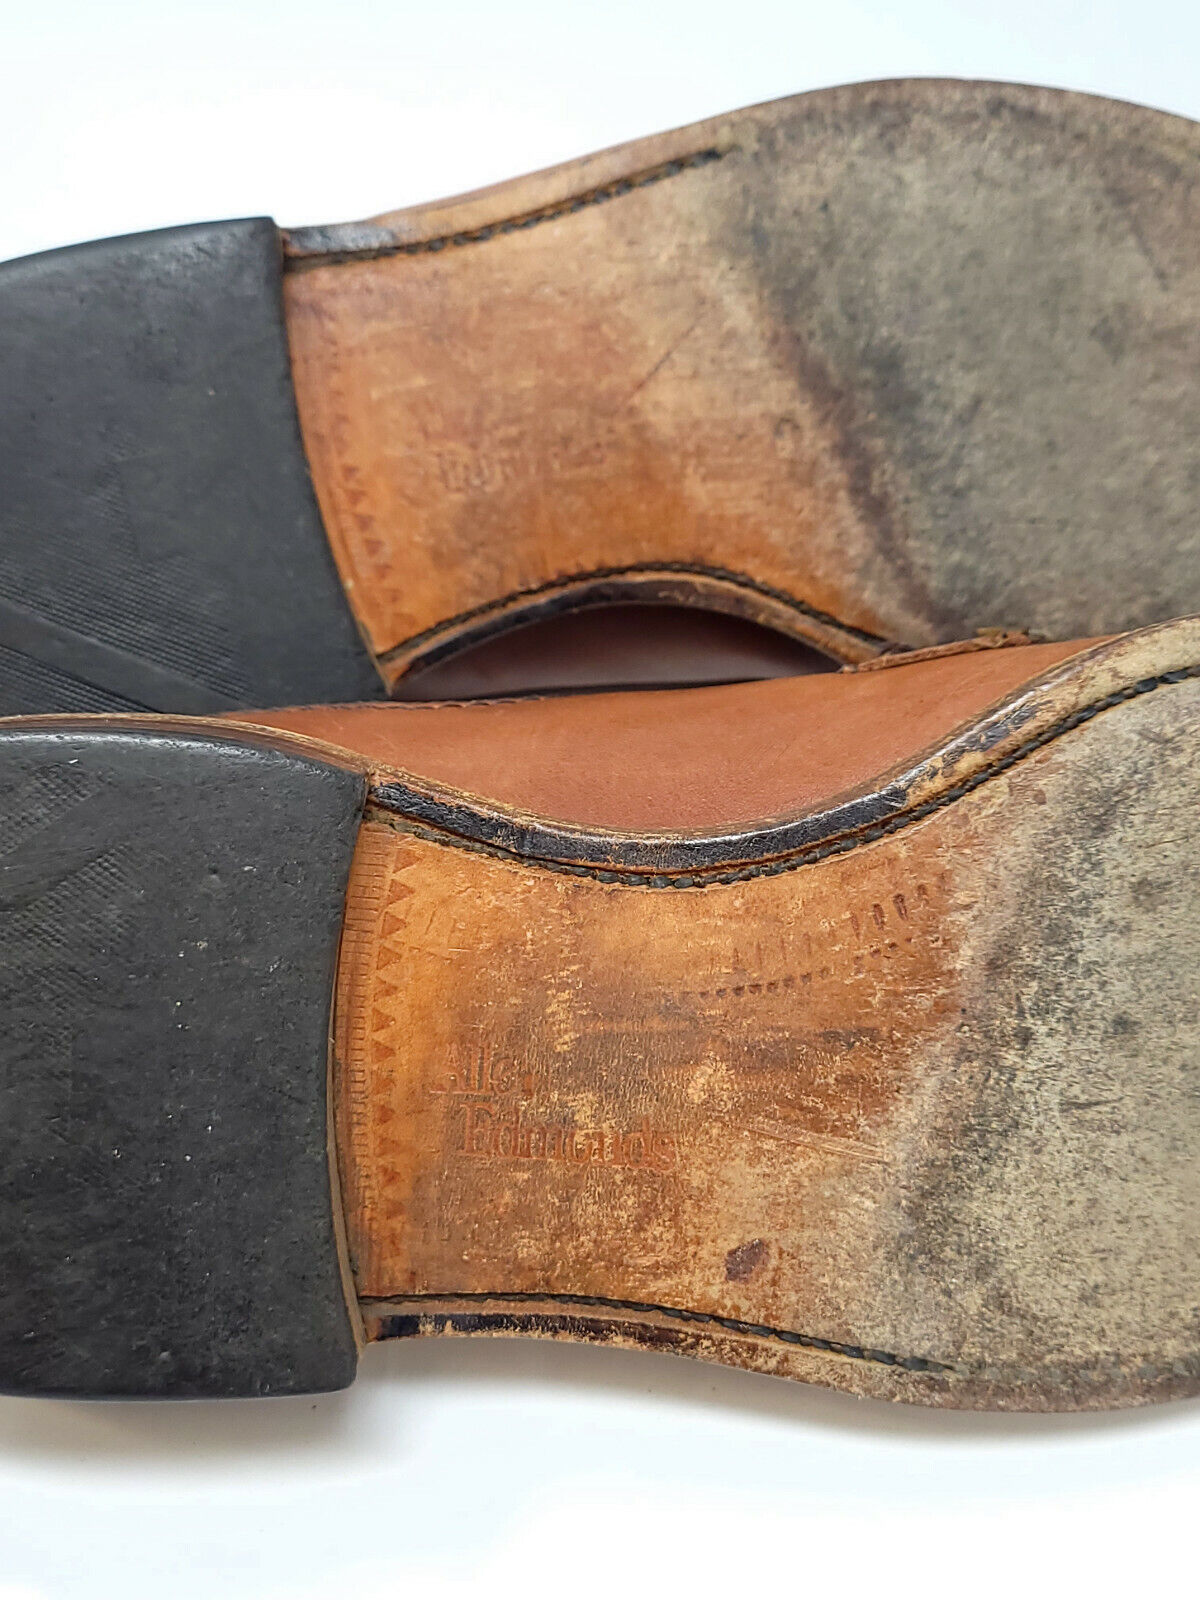 Allen Edmonds Men's Brown Split Toe Oxfords Shoes Sz 8 - D 0245 - Pre-owned